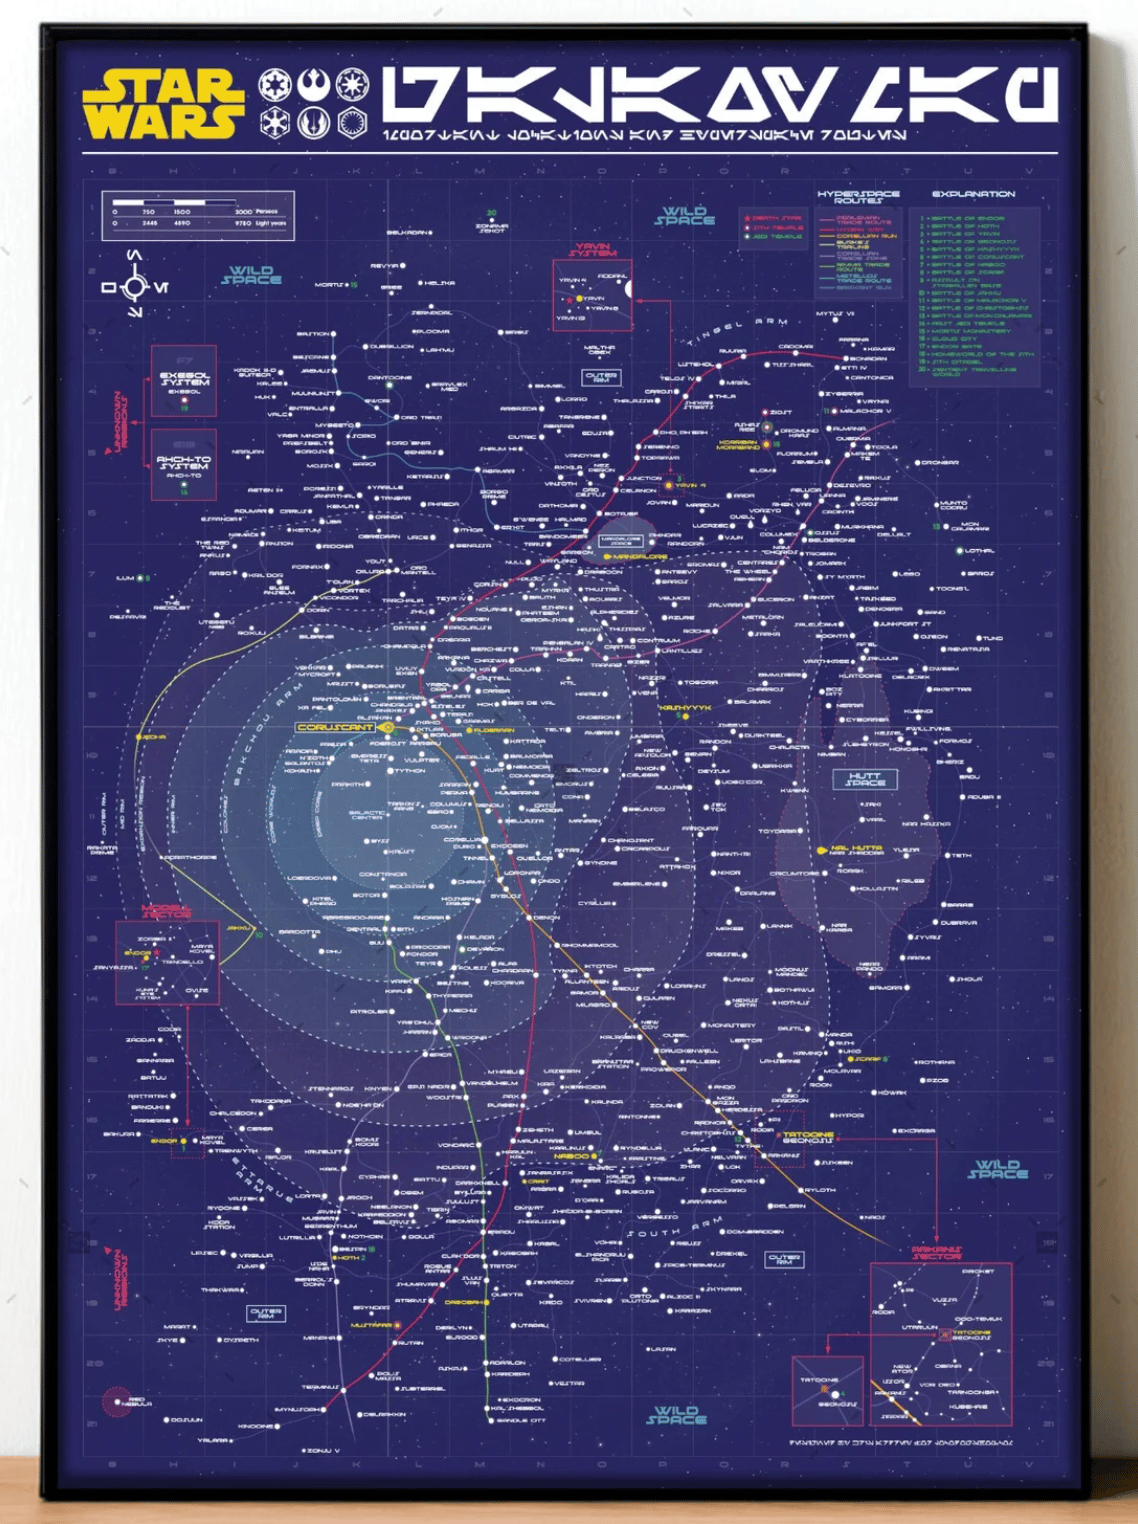 Stars Wars Galaxy Map